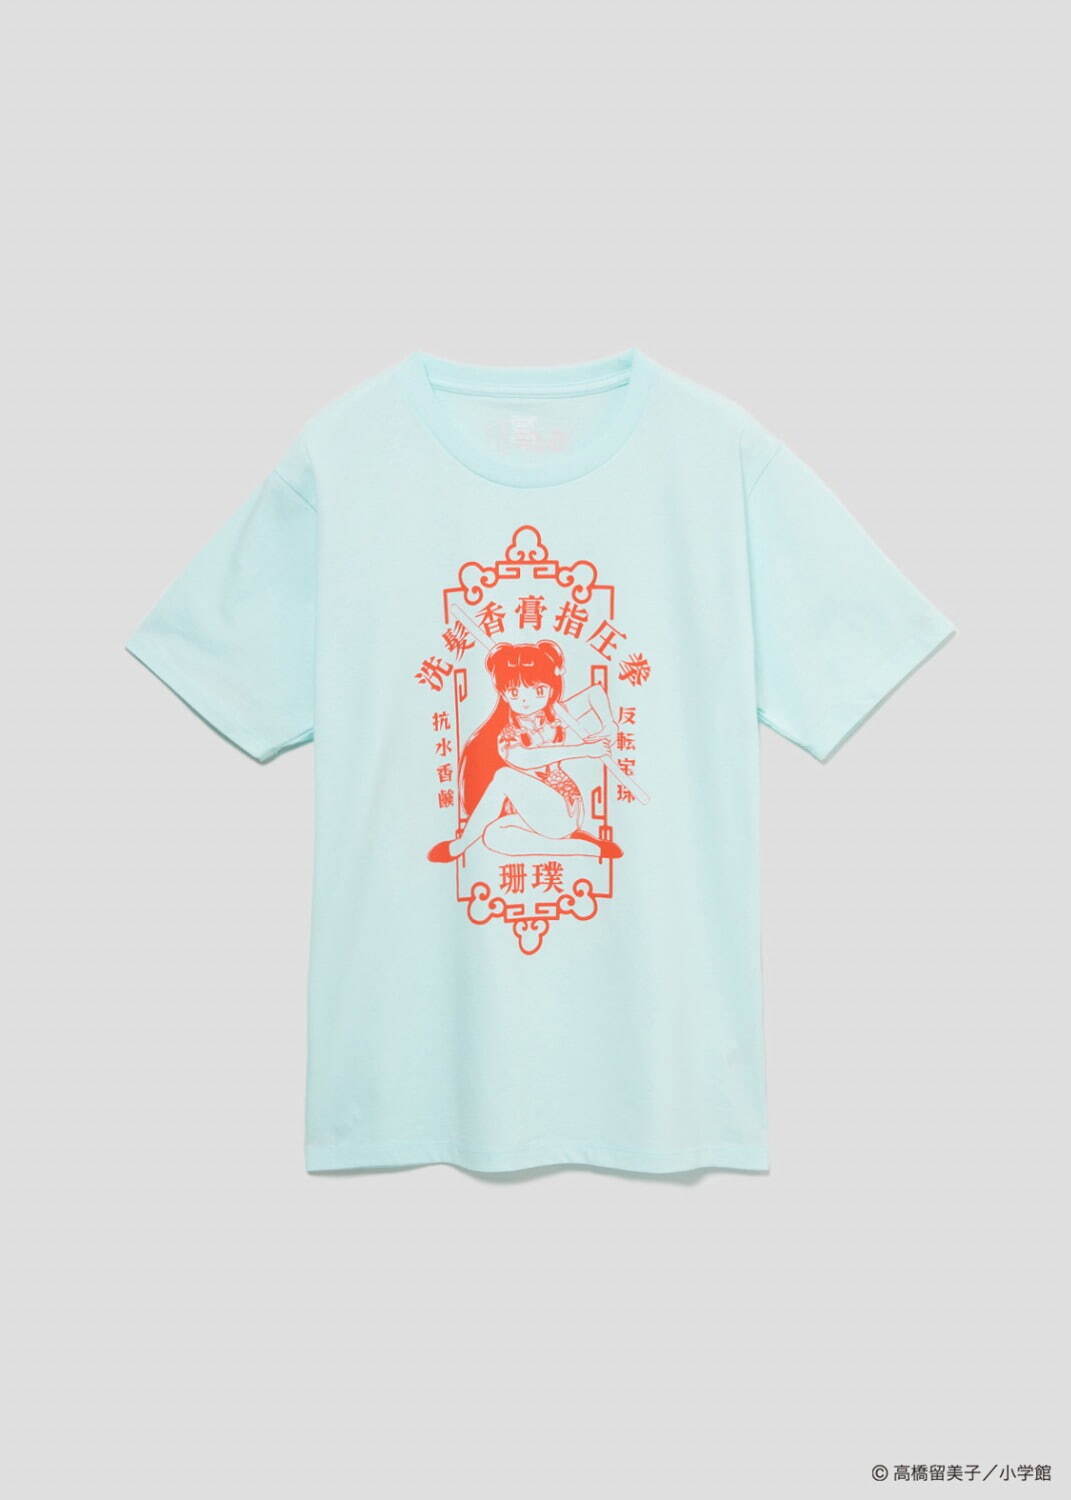 Tシャツ「シャンプー」3,500円